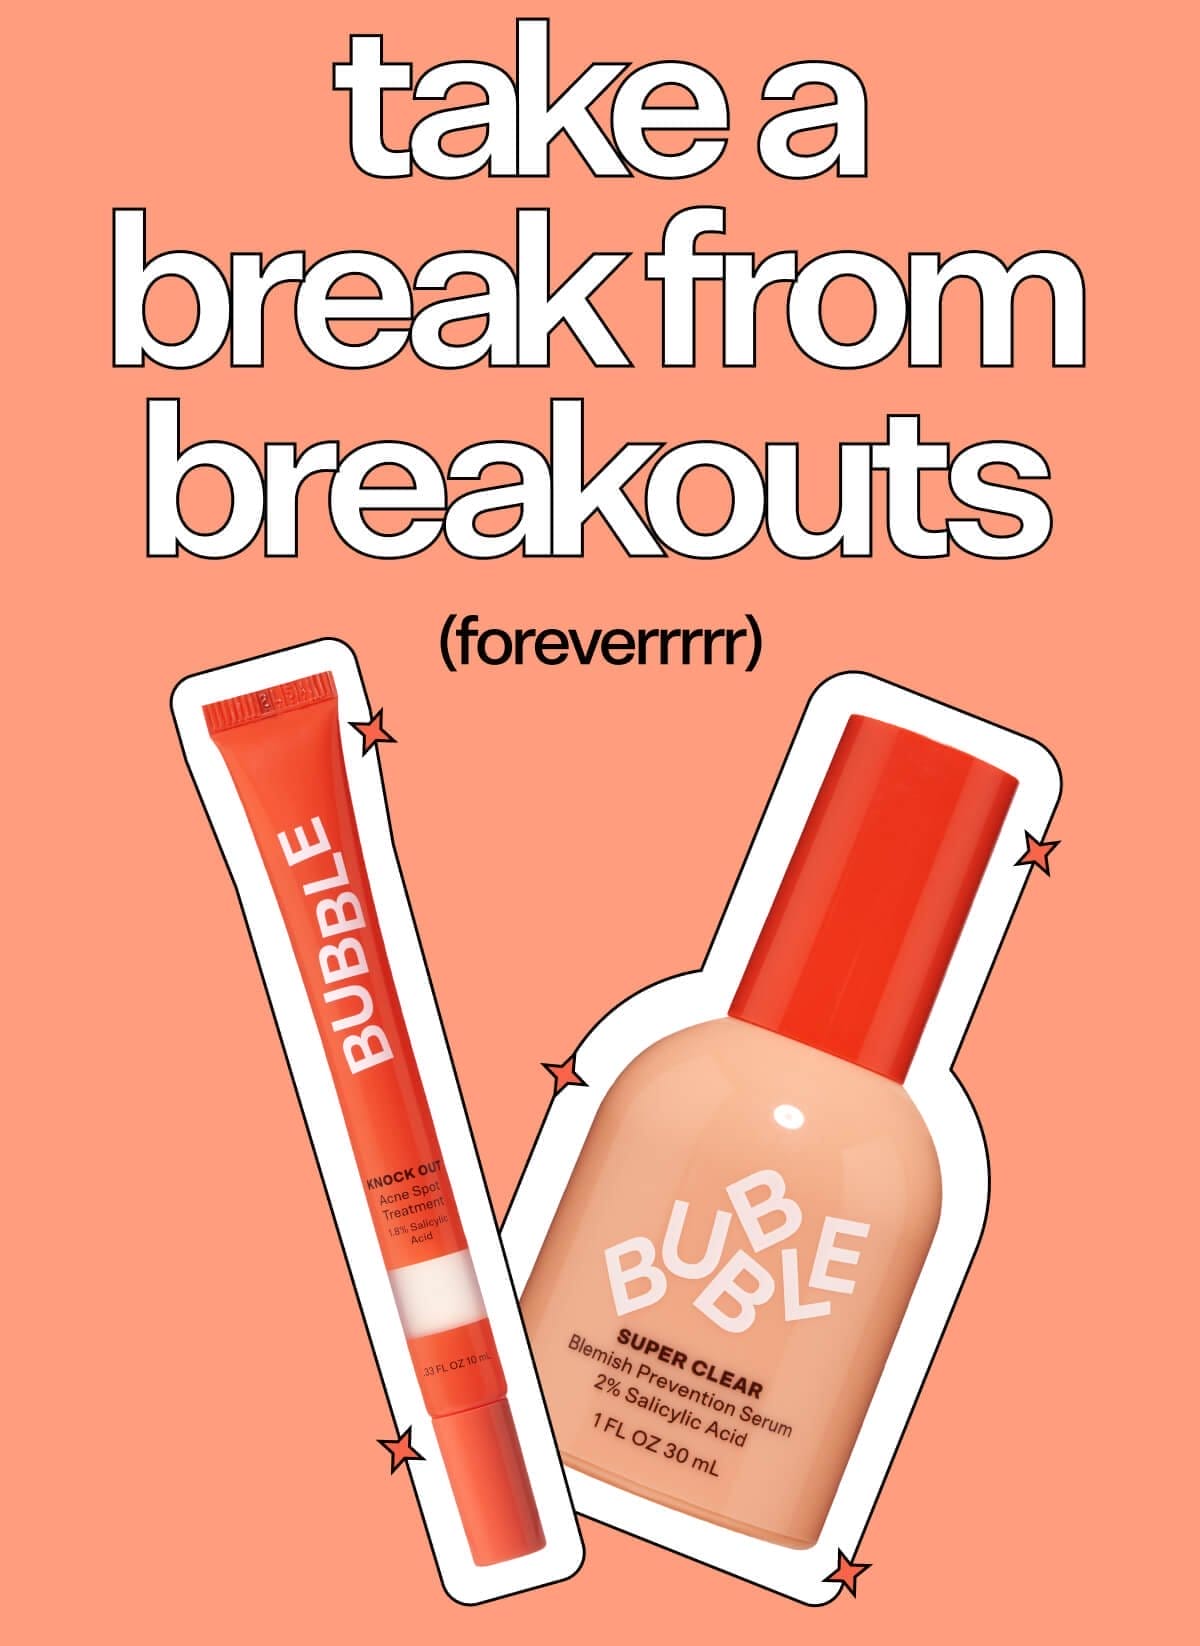 Take a Break from Breakouts (foreverrrrr)